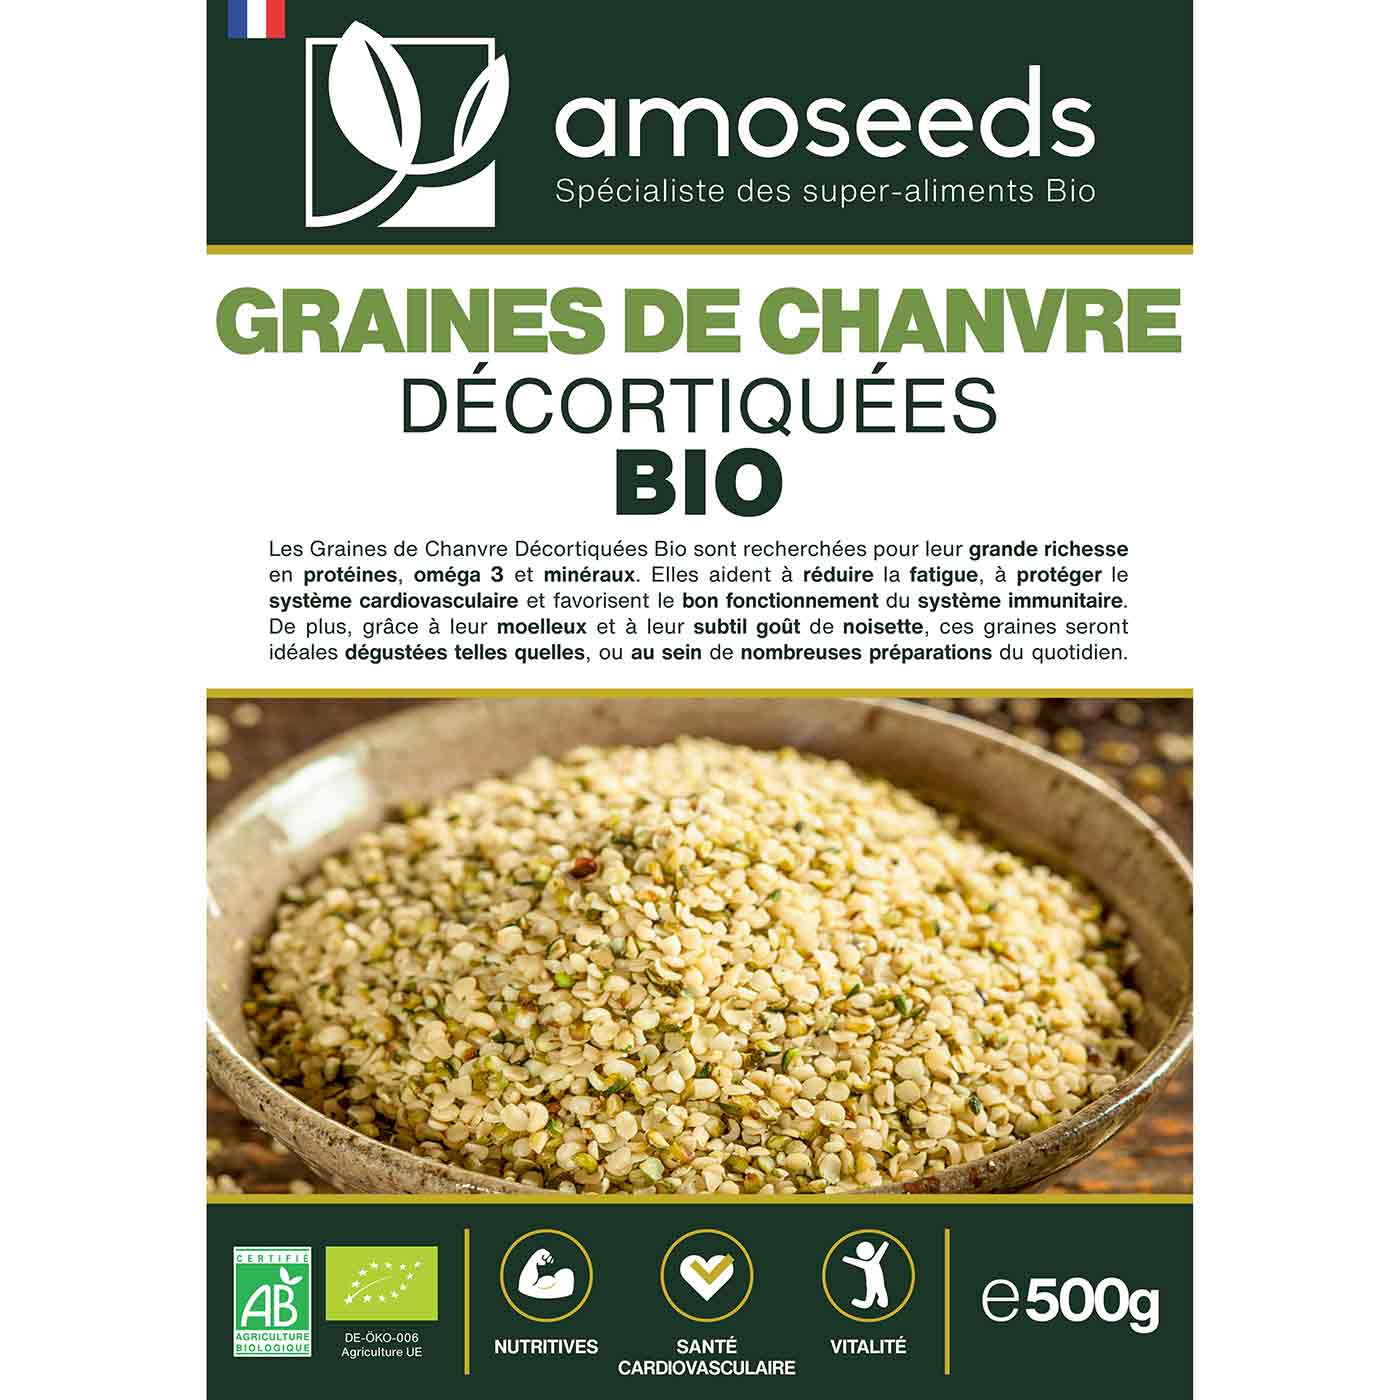 Graines de chanvre decortiquees Bio amoseeds specialiste des super aliments Bio